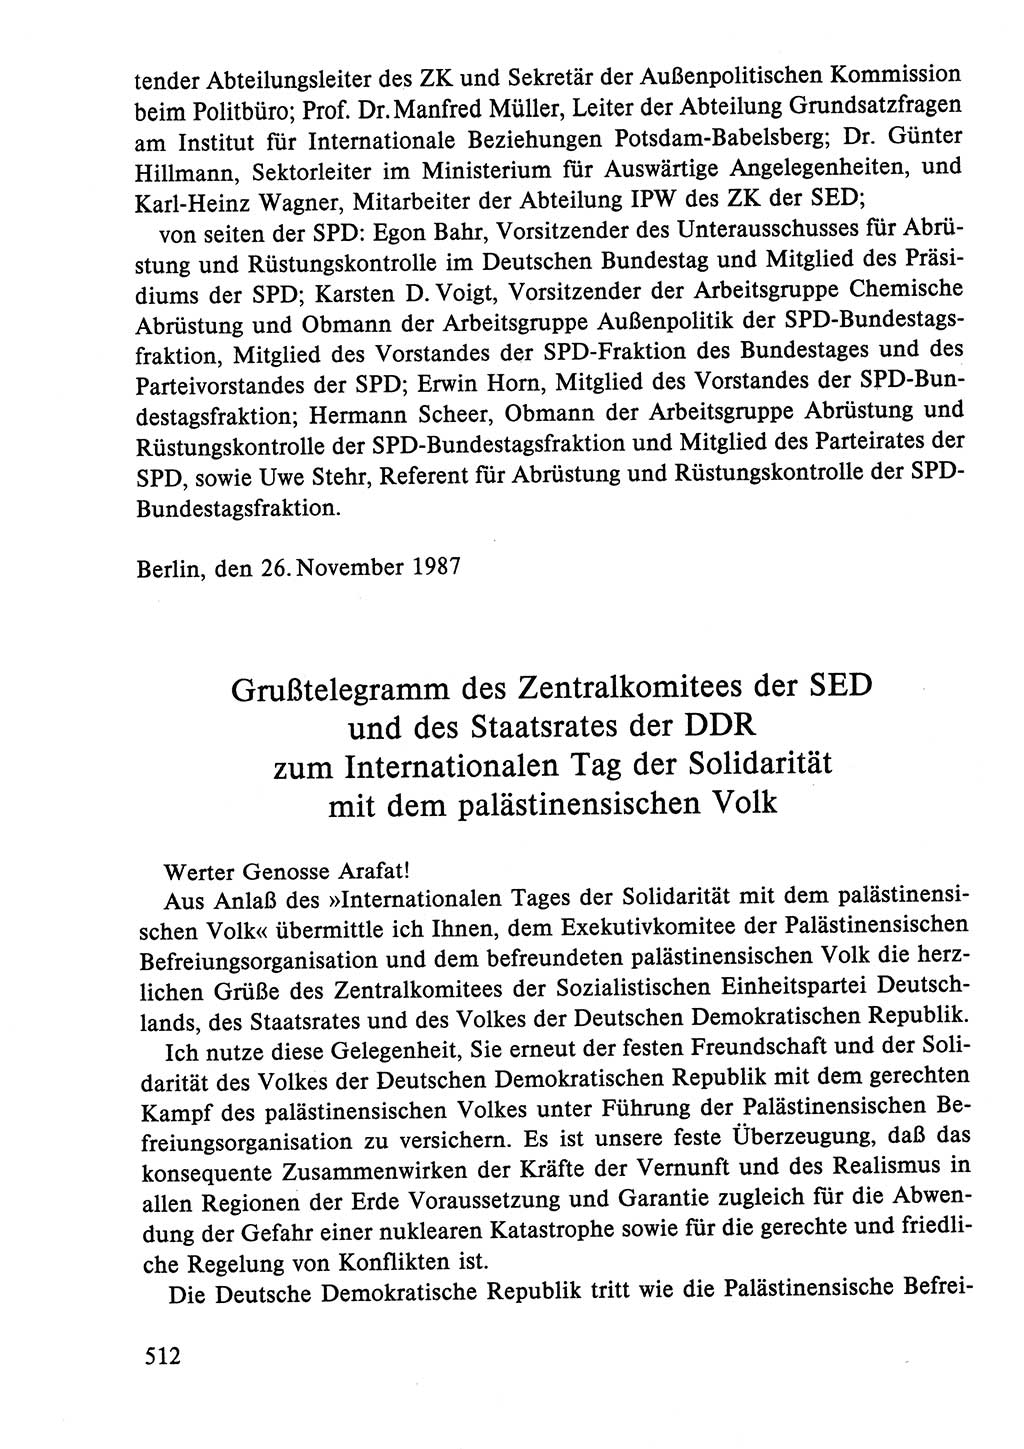 Dokumente der Sozialistischen Einheitspartei Deutschlands (SED) [Deutsche Demokratische Republik (DDR)] 1986-1987, Seite 512 (Dok. SED DDR 1986-1987, S. 512)